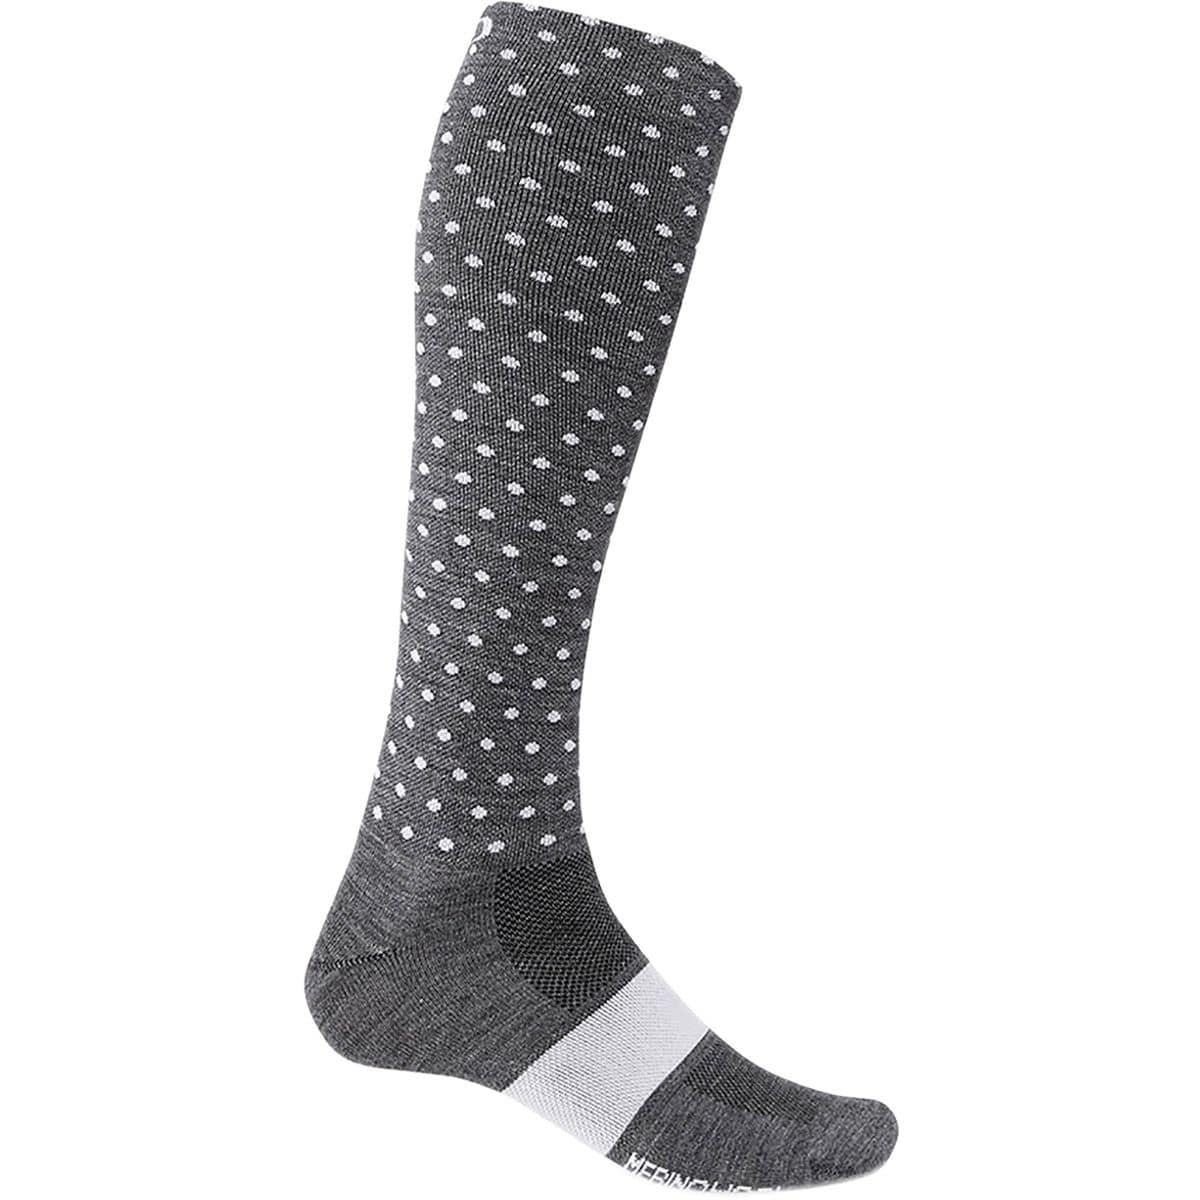 Giro Merino Wool Hightower Socks - Men's